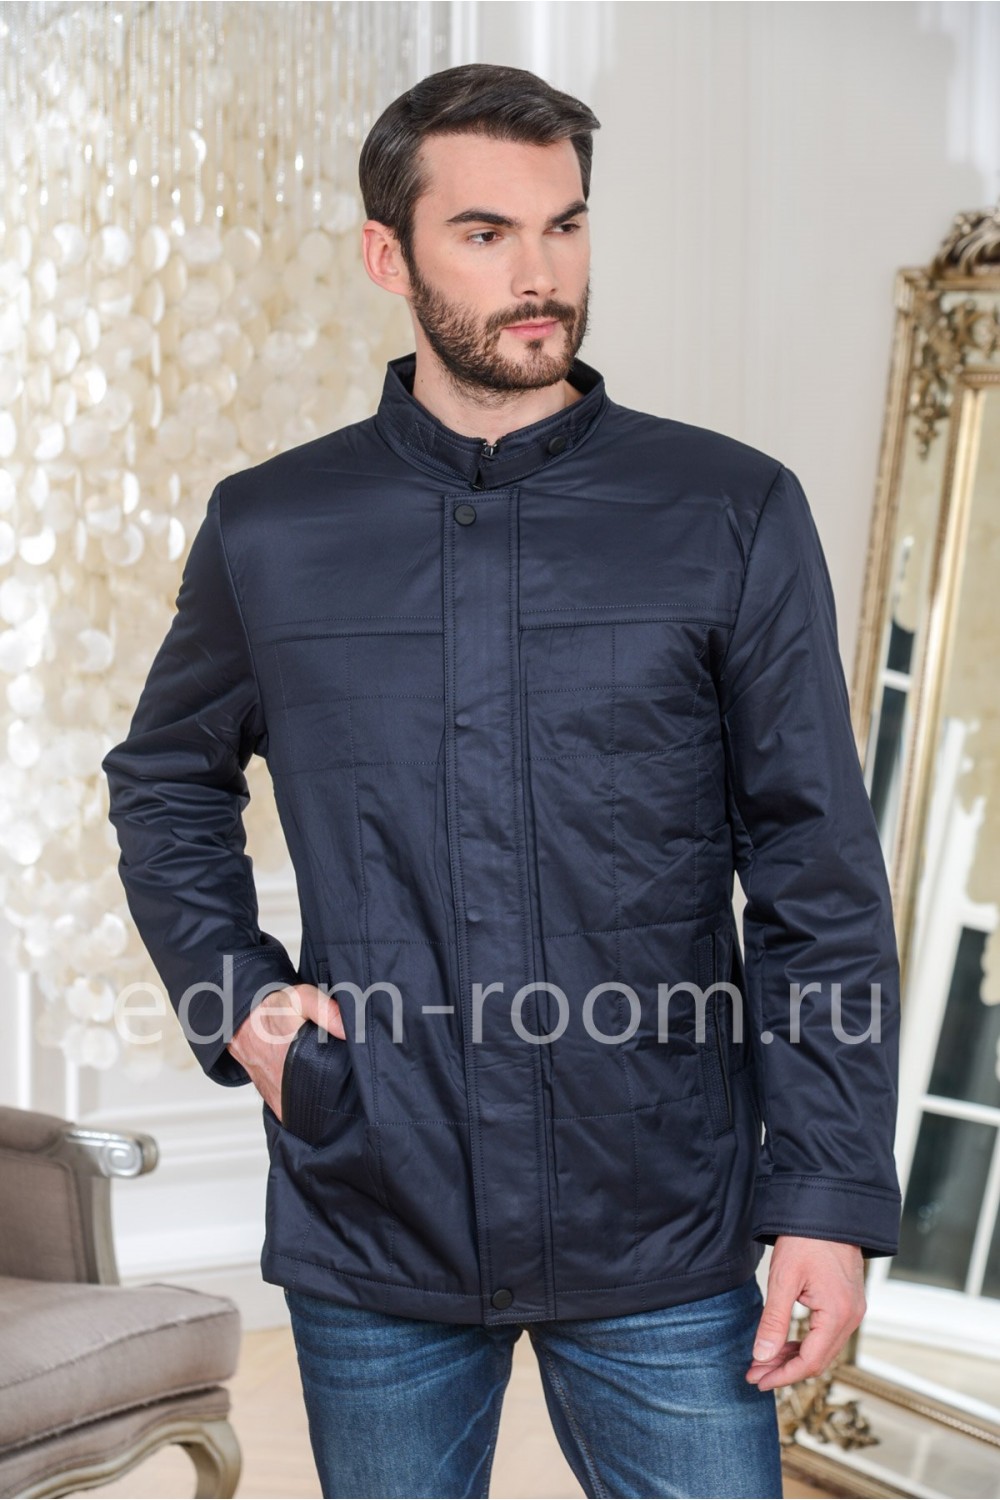 Облегчённая мужская куртка из ткани до 70 размера